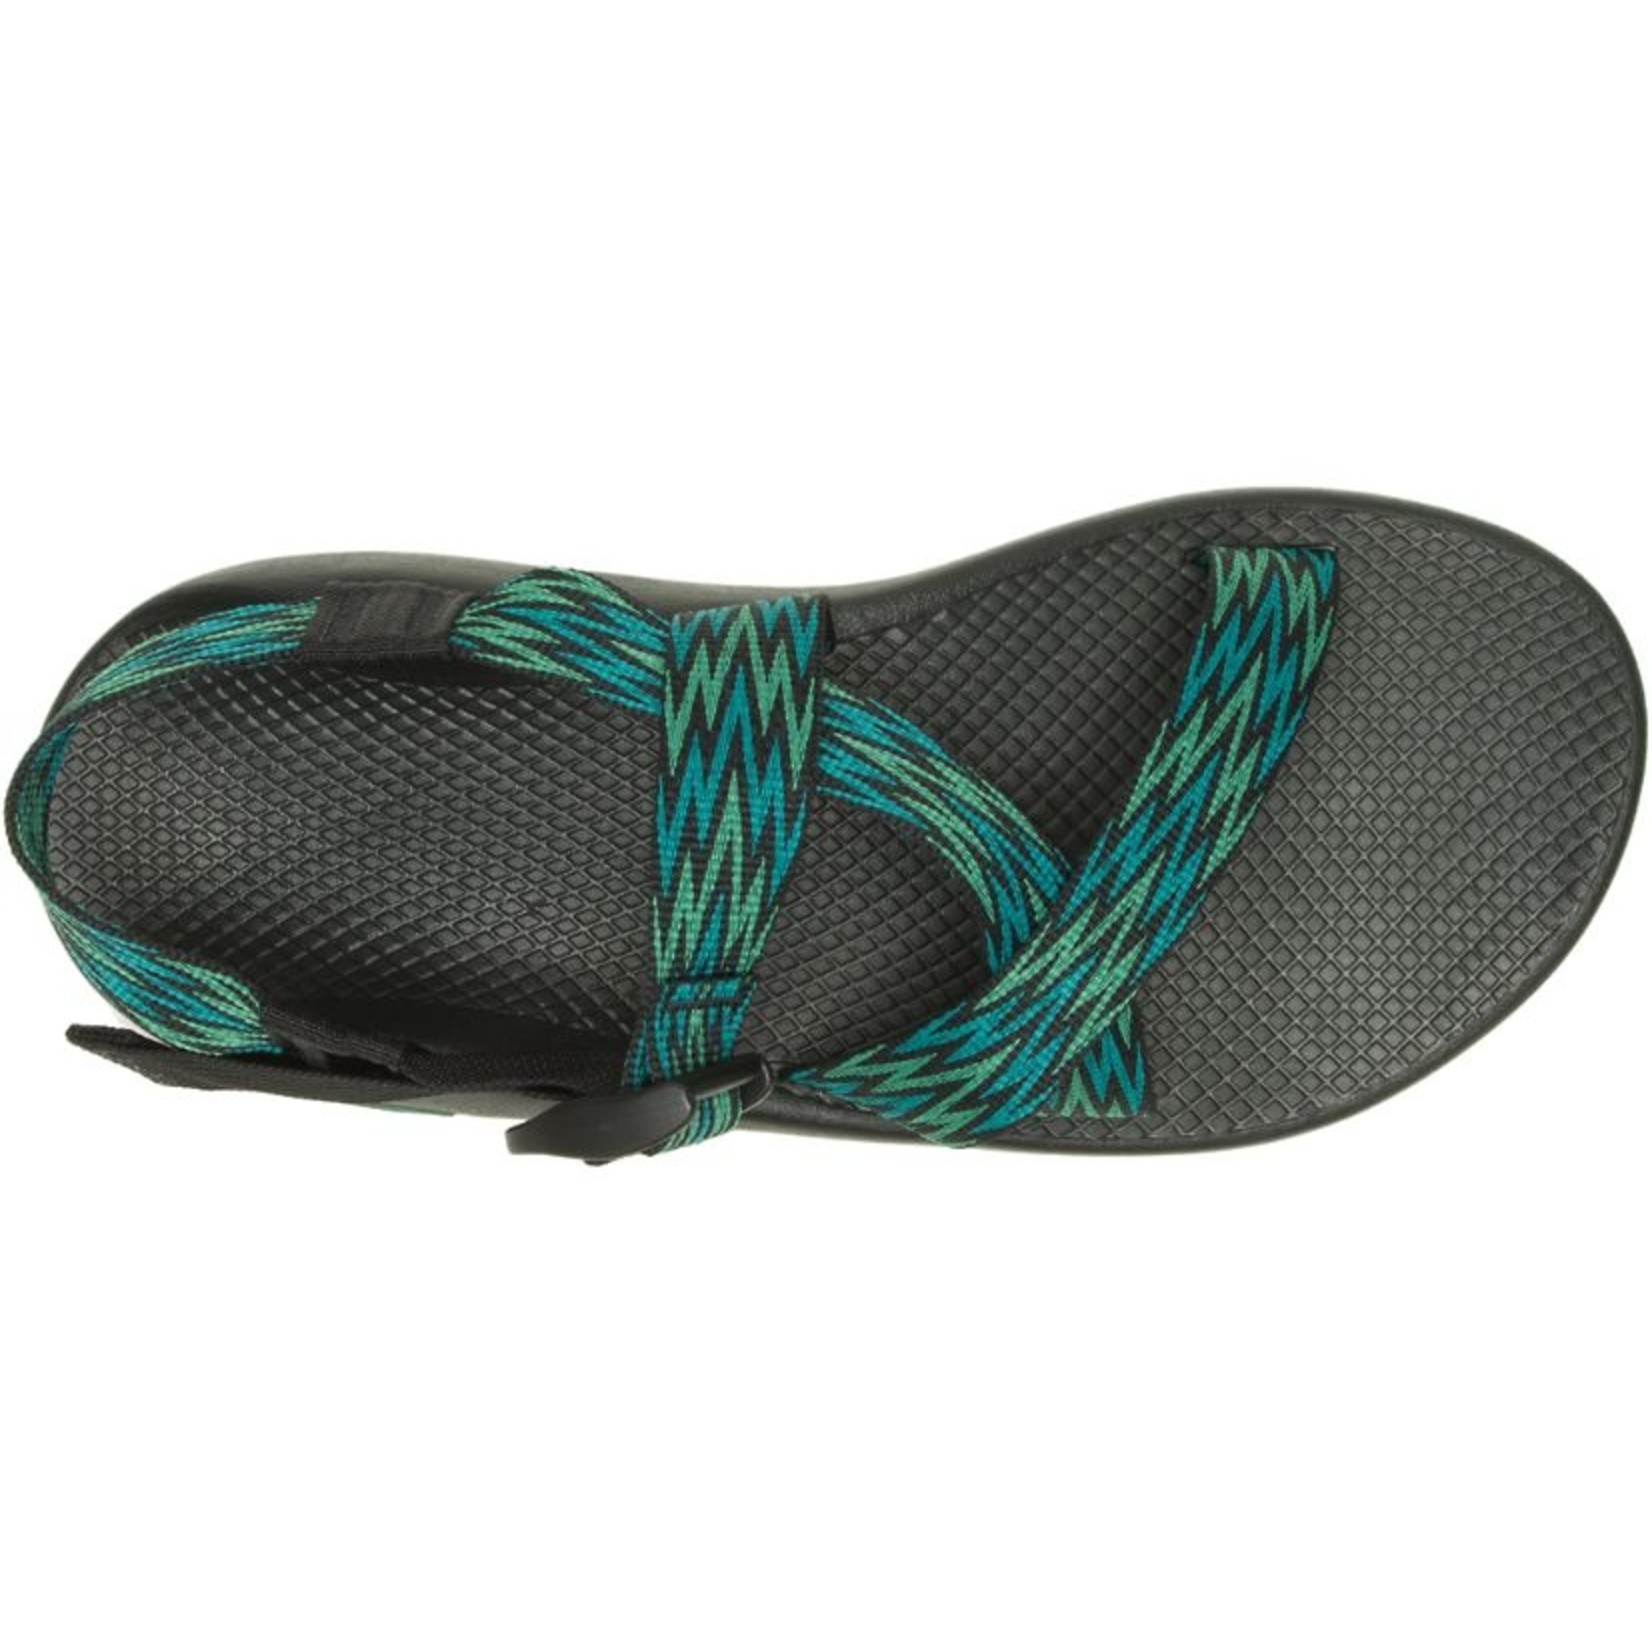 Chaco Z/1 Classic Sandal - Men's - Footwear